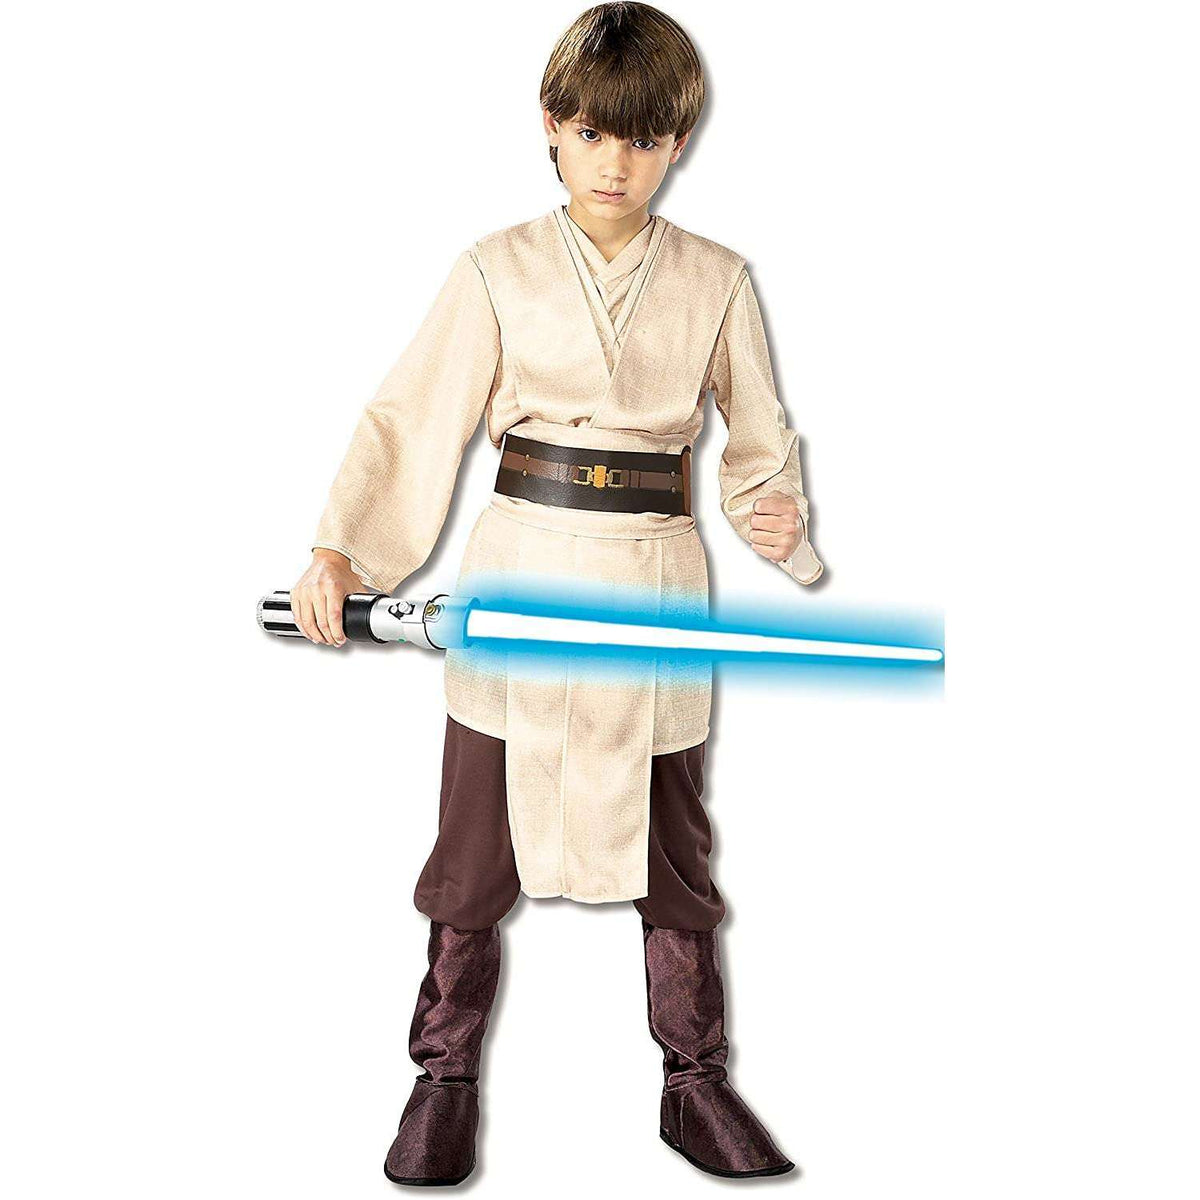 Star Wars Deluxe Jedi Knight Child's Costume